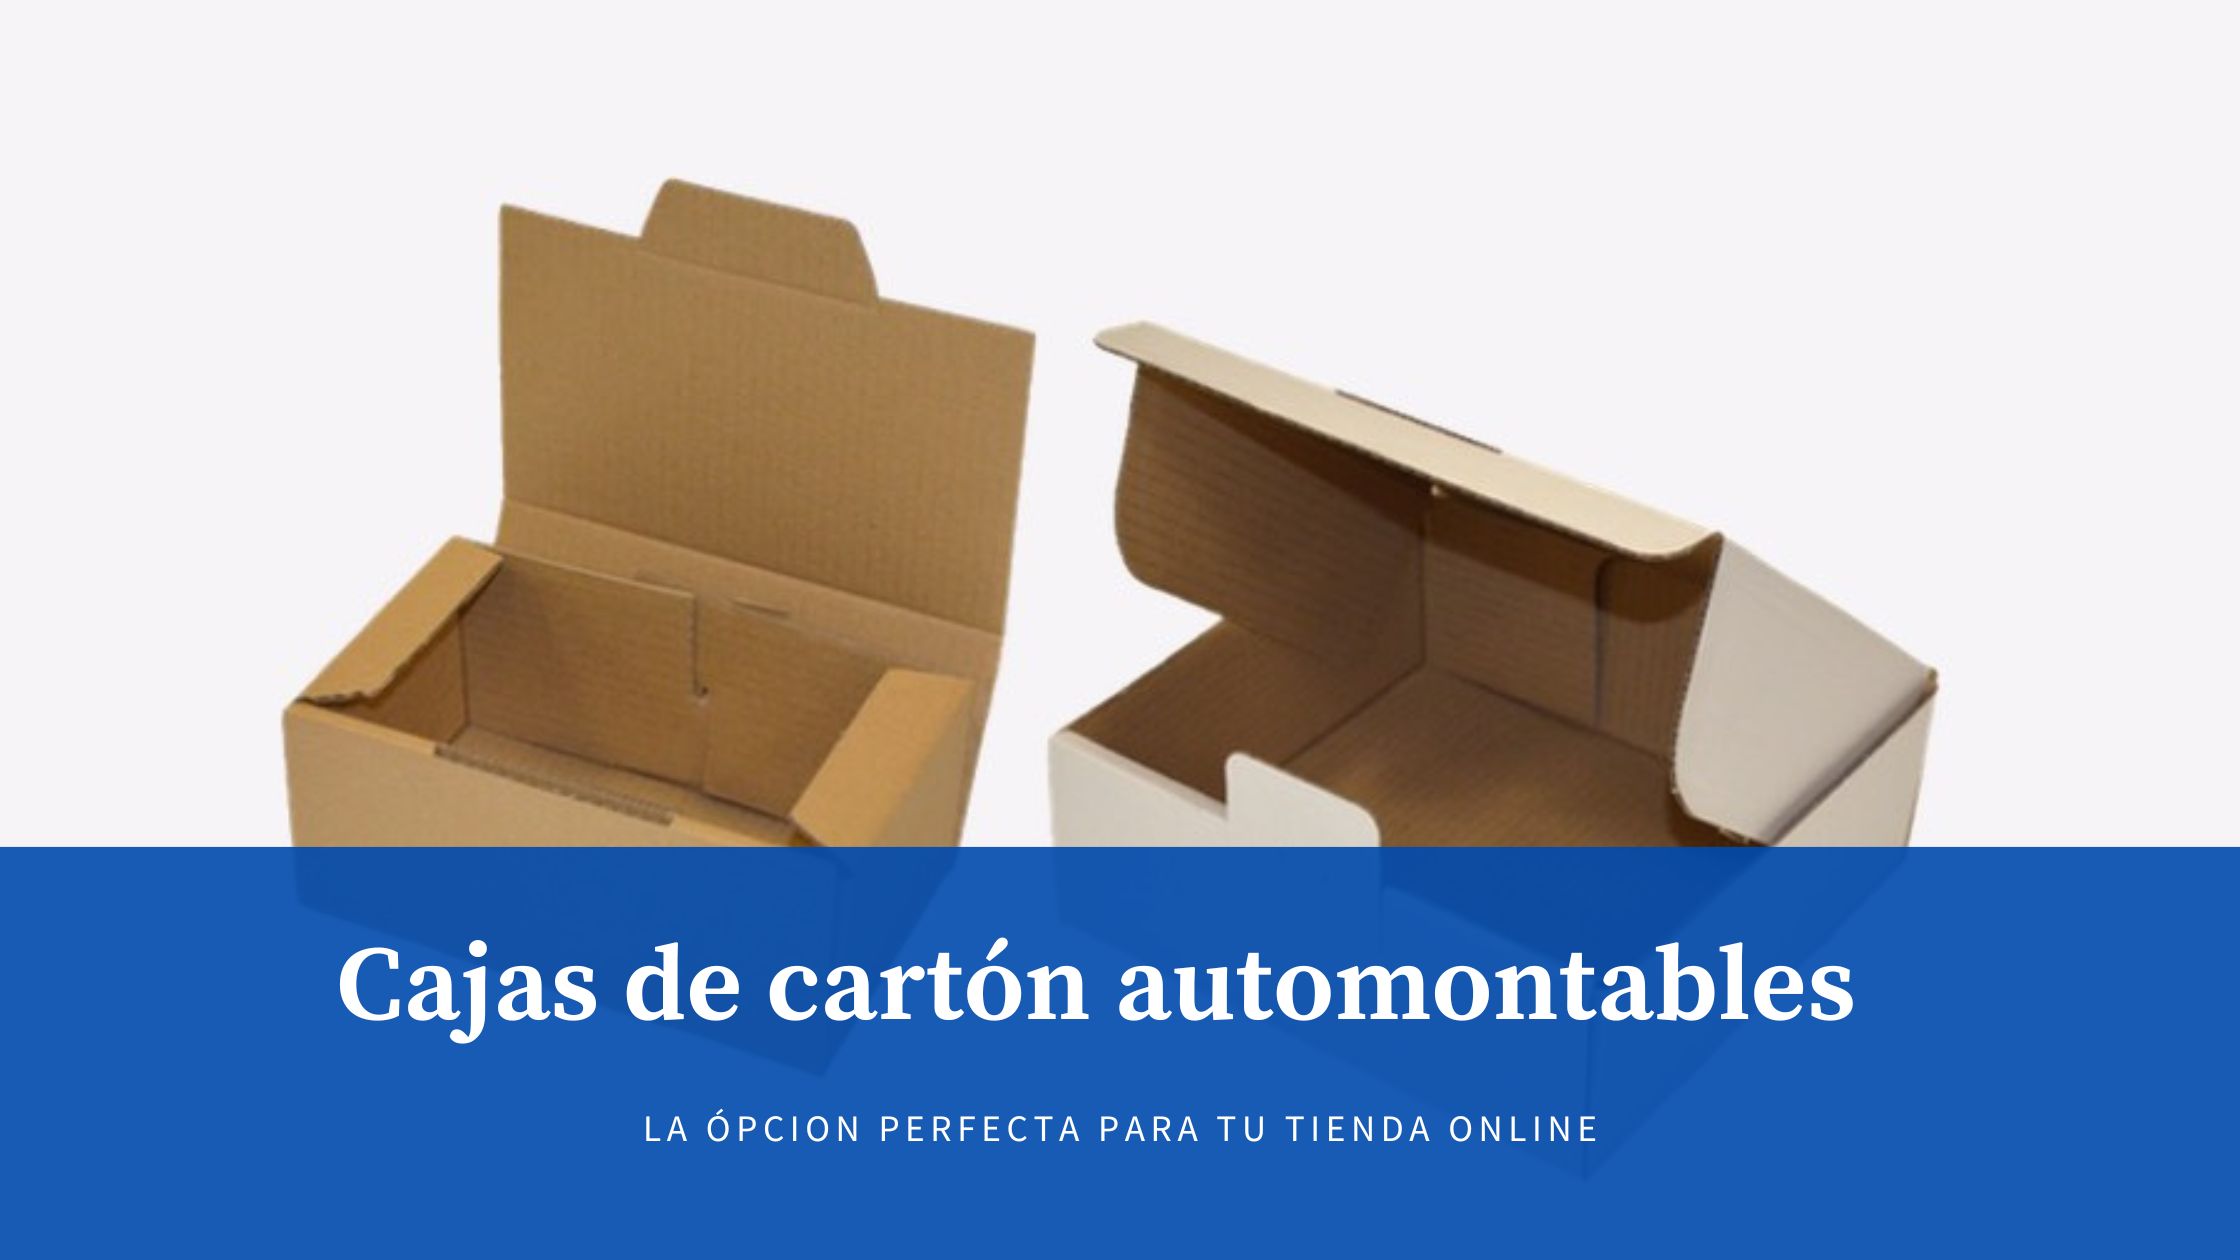 Cajas de cartón automontables tiendas online - Cajas y Precintos